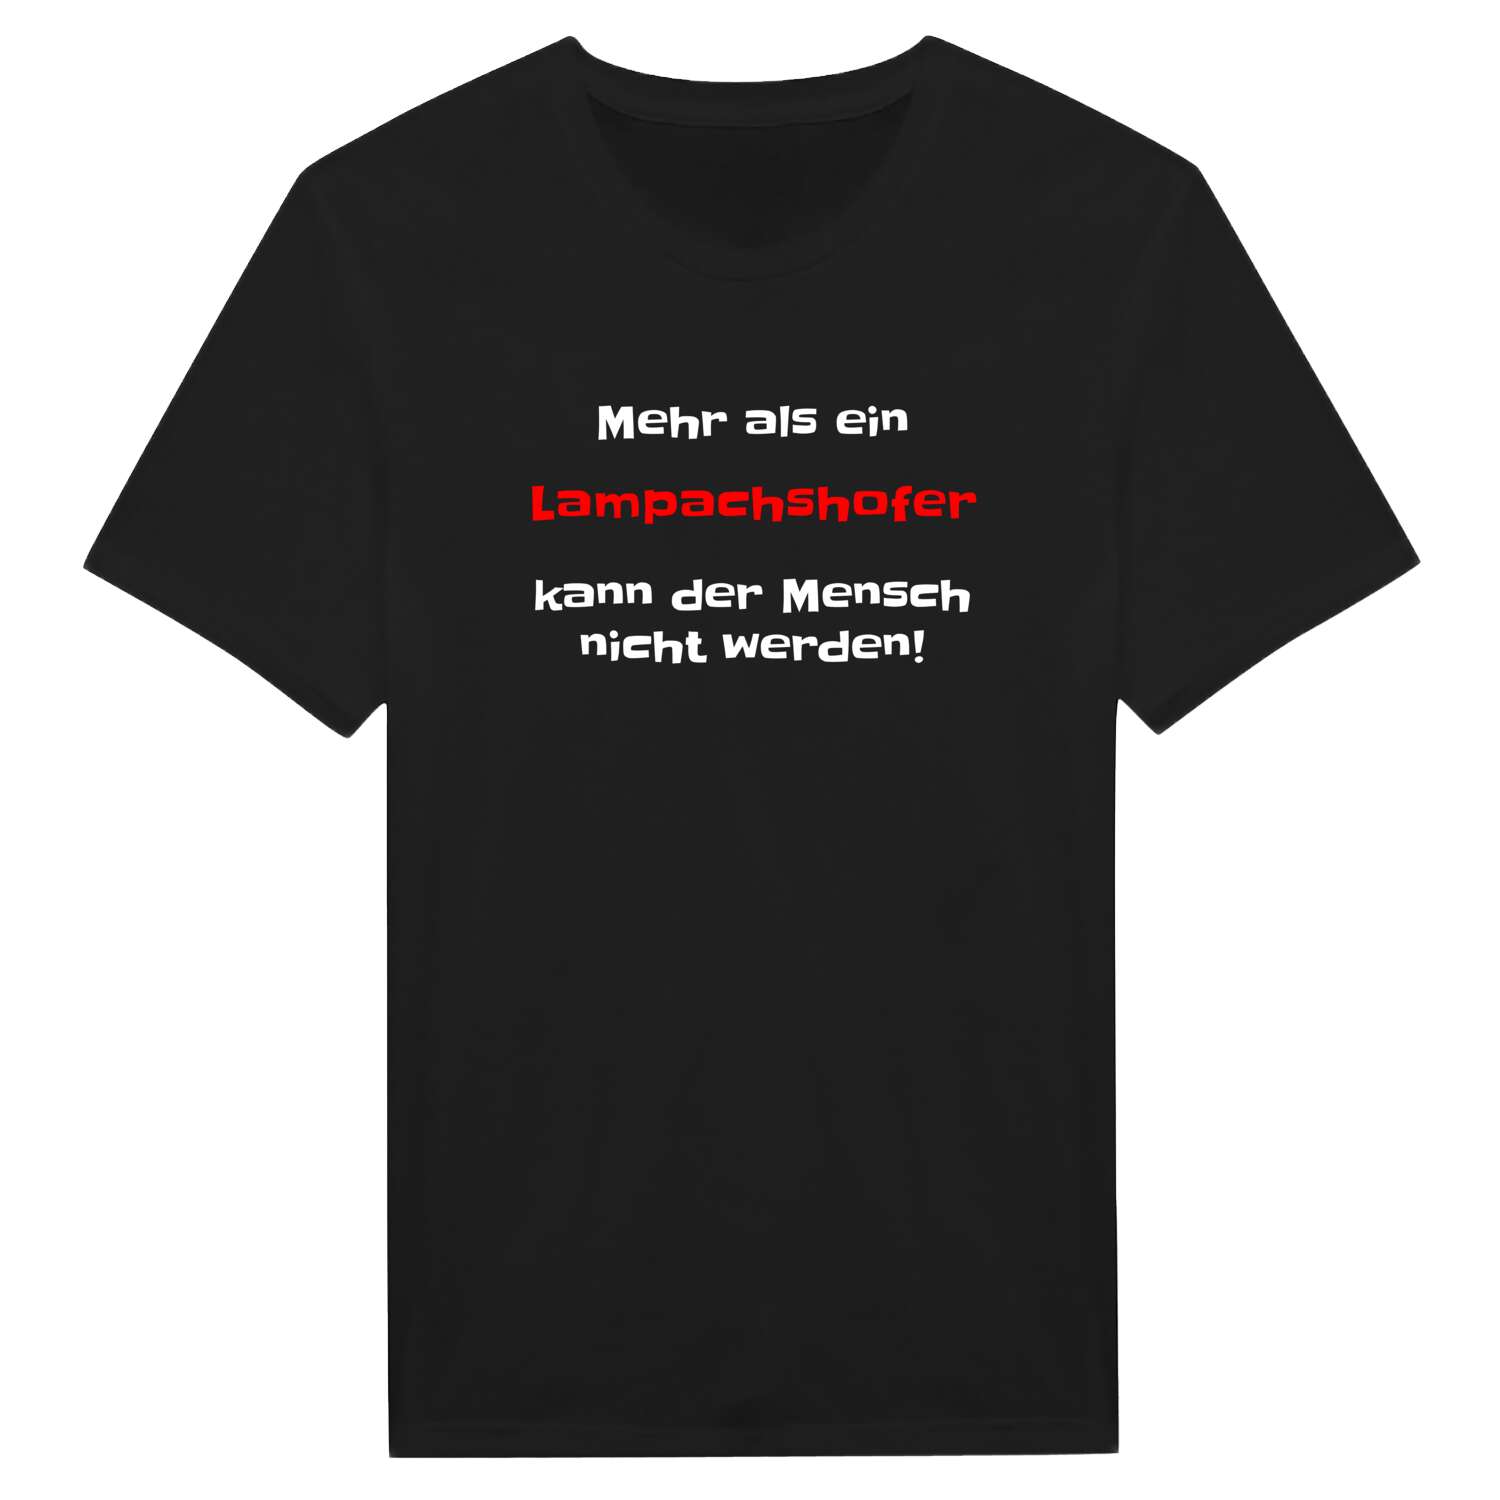 Lampachshof T-Shirt »Mehr als ein«